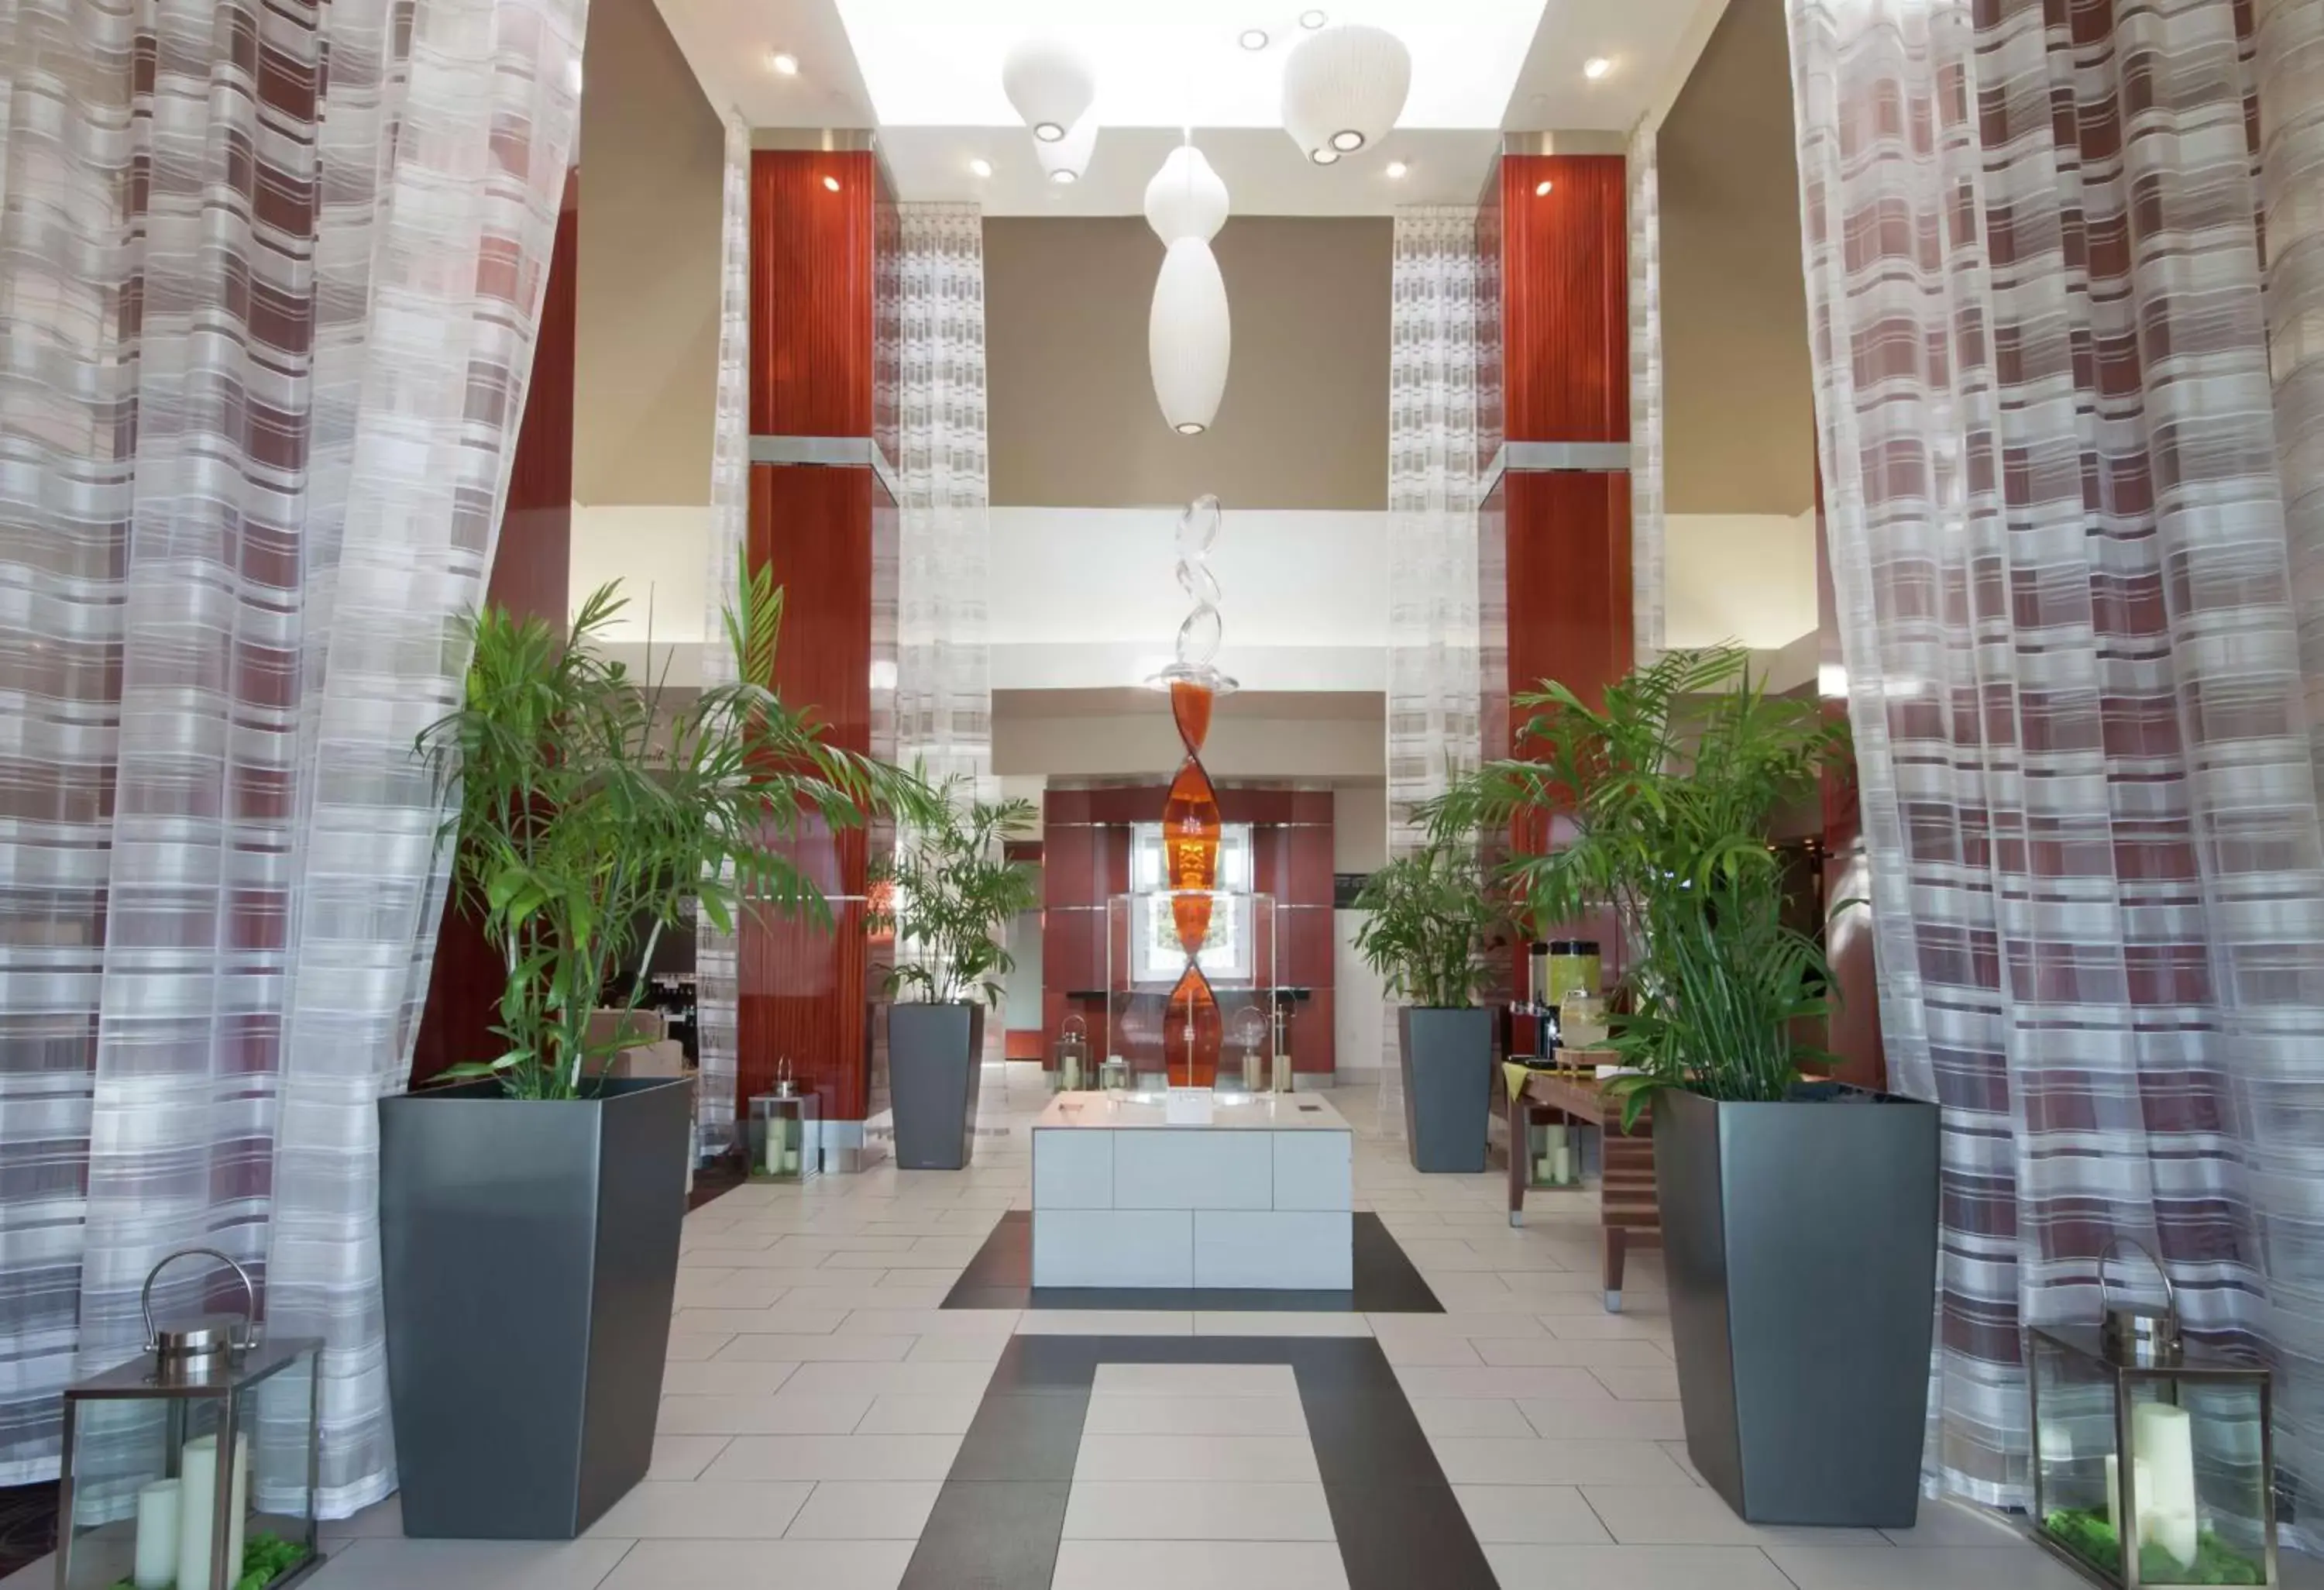 Lobby or reception in Hilton Garden Inn Oklahoma City Midtown